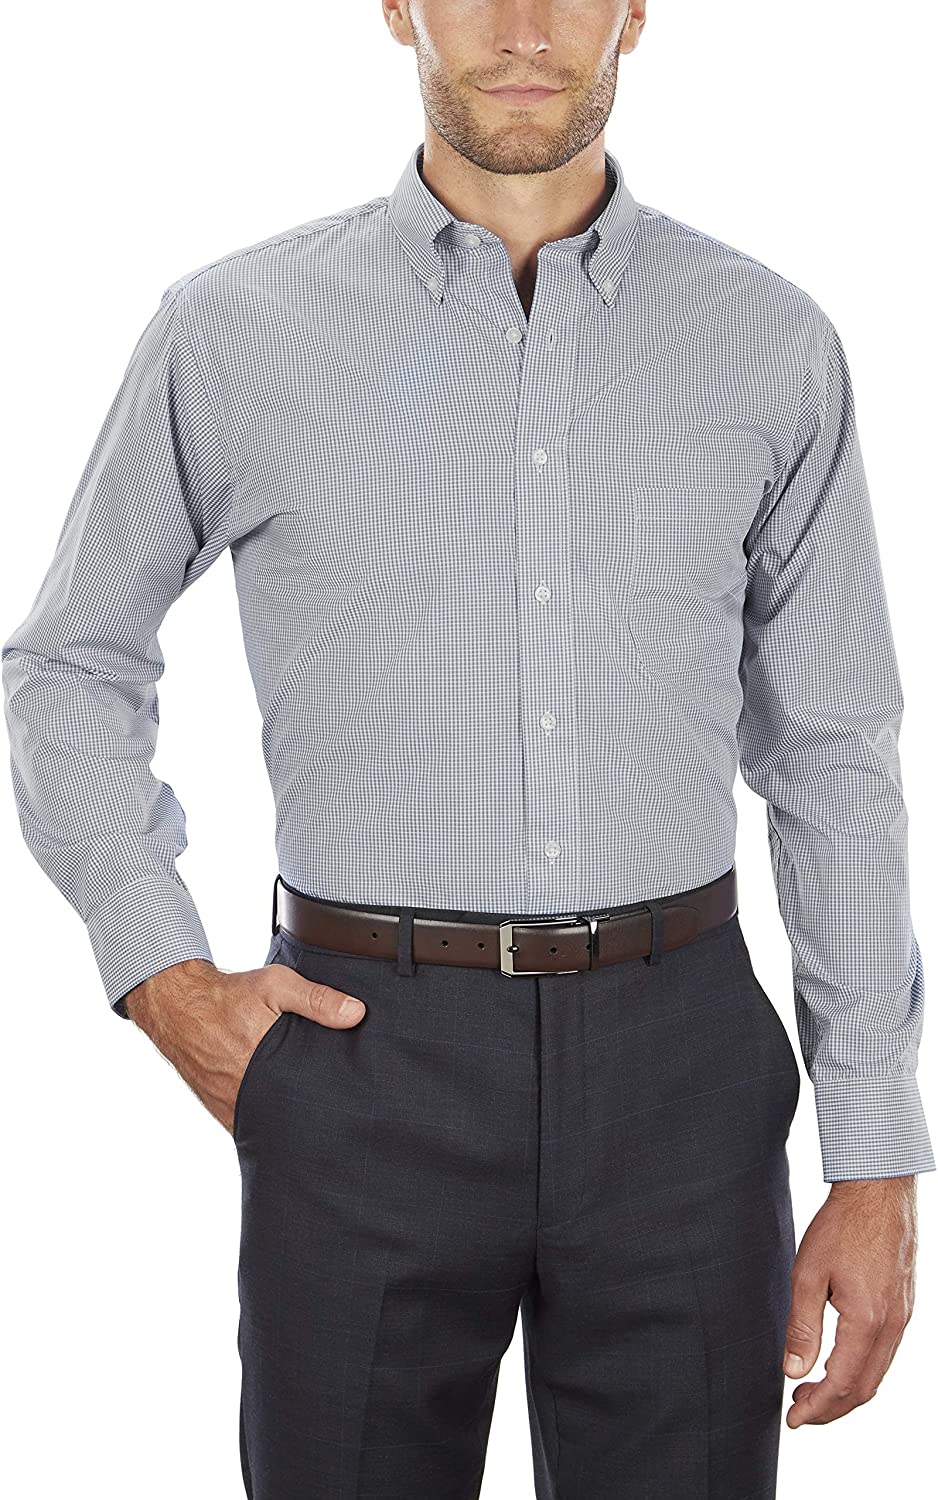 Heusen Men's Regular Fit Gingham Button Down Collar Dress Shirt